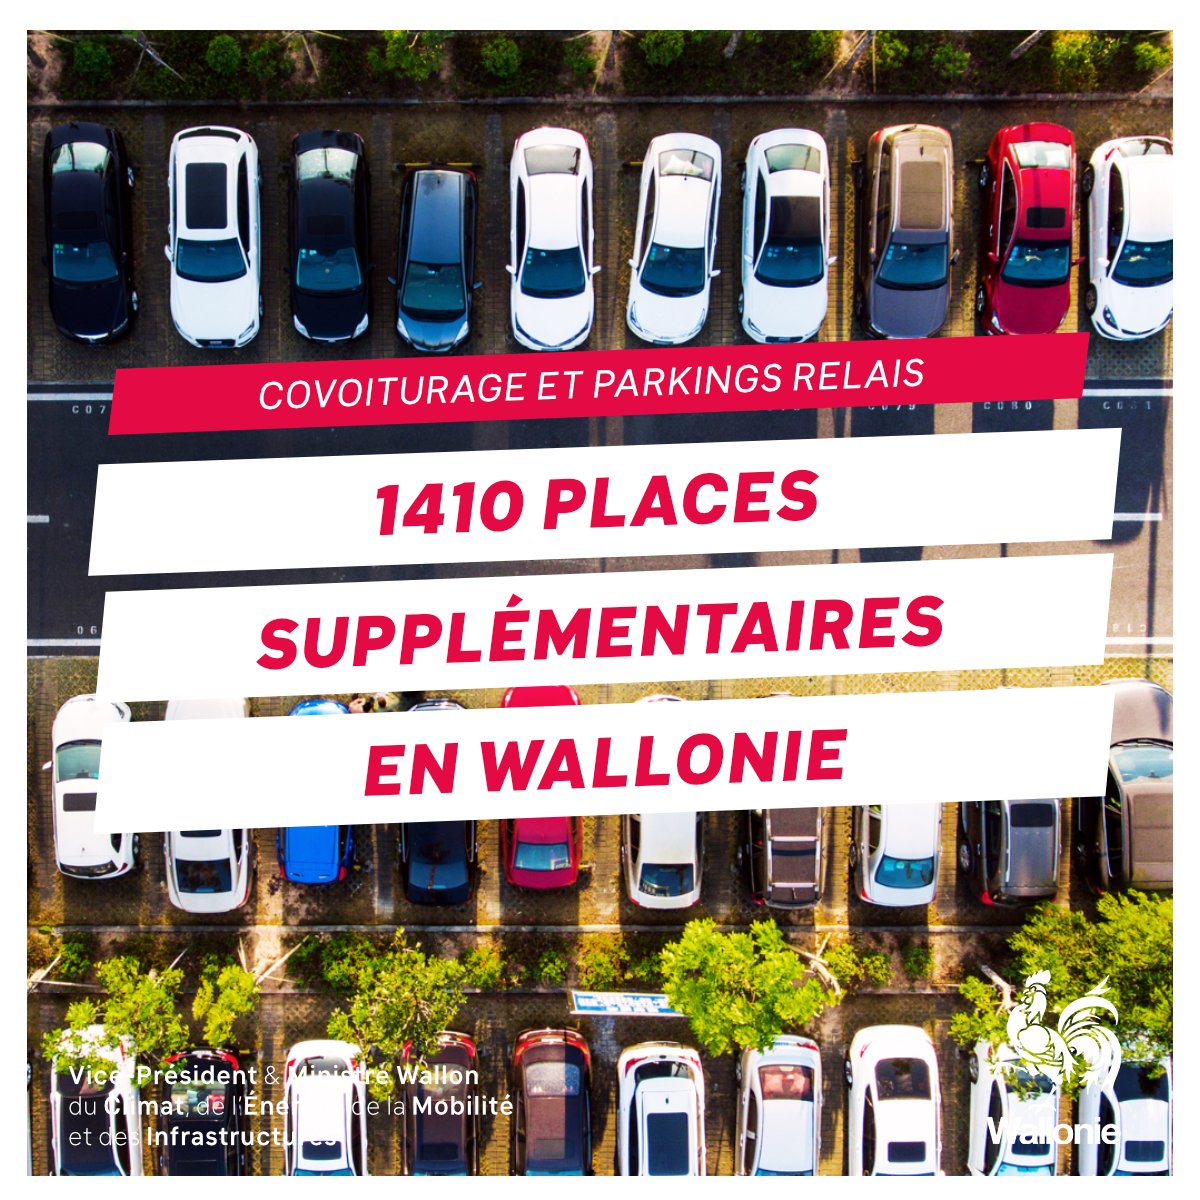 🚗💼 1410 nouvelles places de covoiturage et de parkings relais bientôt en Wallonie ! Un pas de plus vers une vision FAST, visant à réduire l'autosolisme et à encourager le covoiturage et les modes de transport alternatifs 🚉🚍 ℹ️ bit.ly/3w5A9Qr